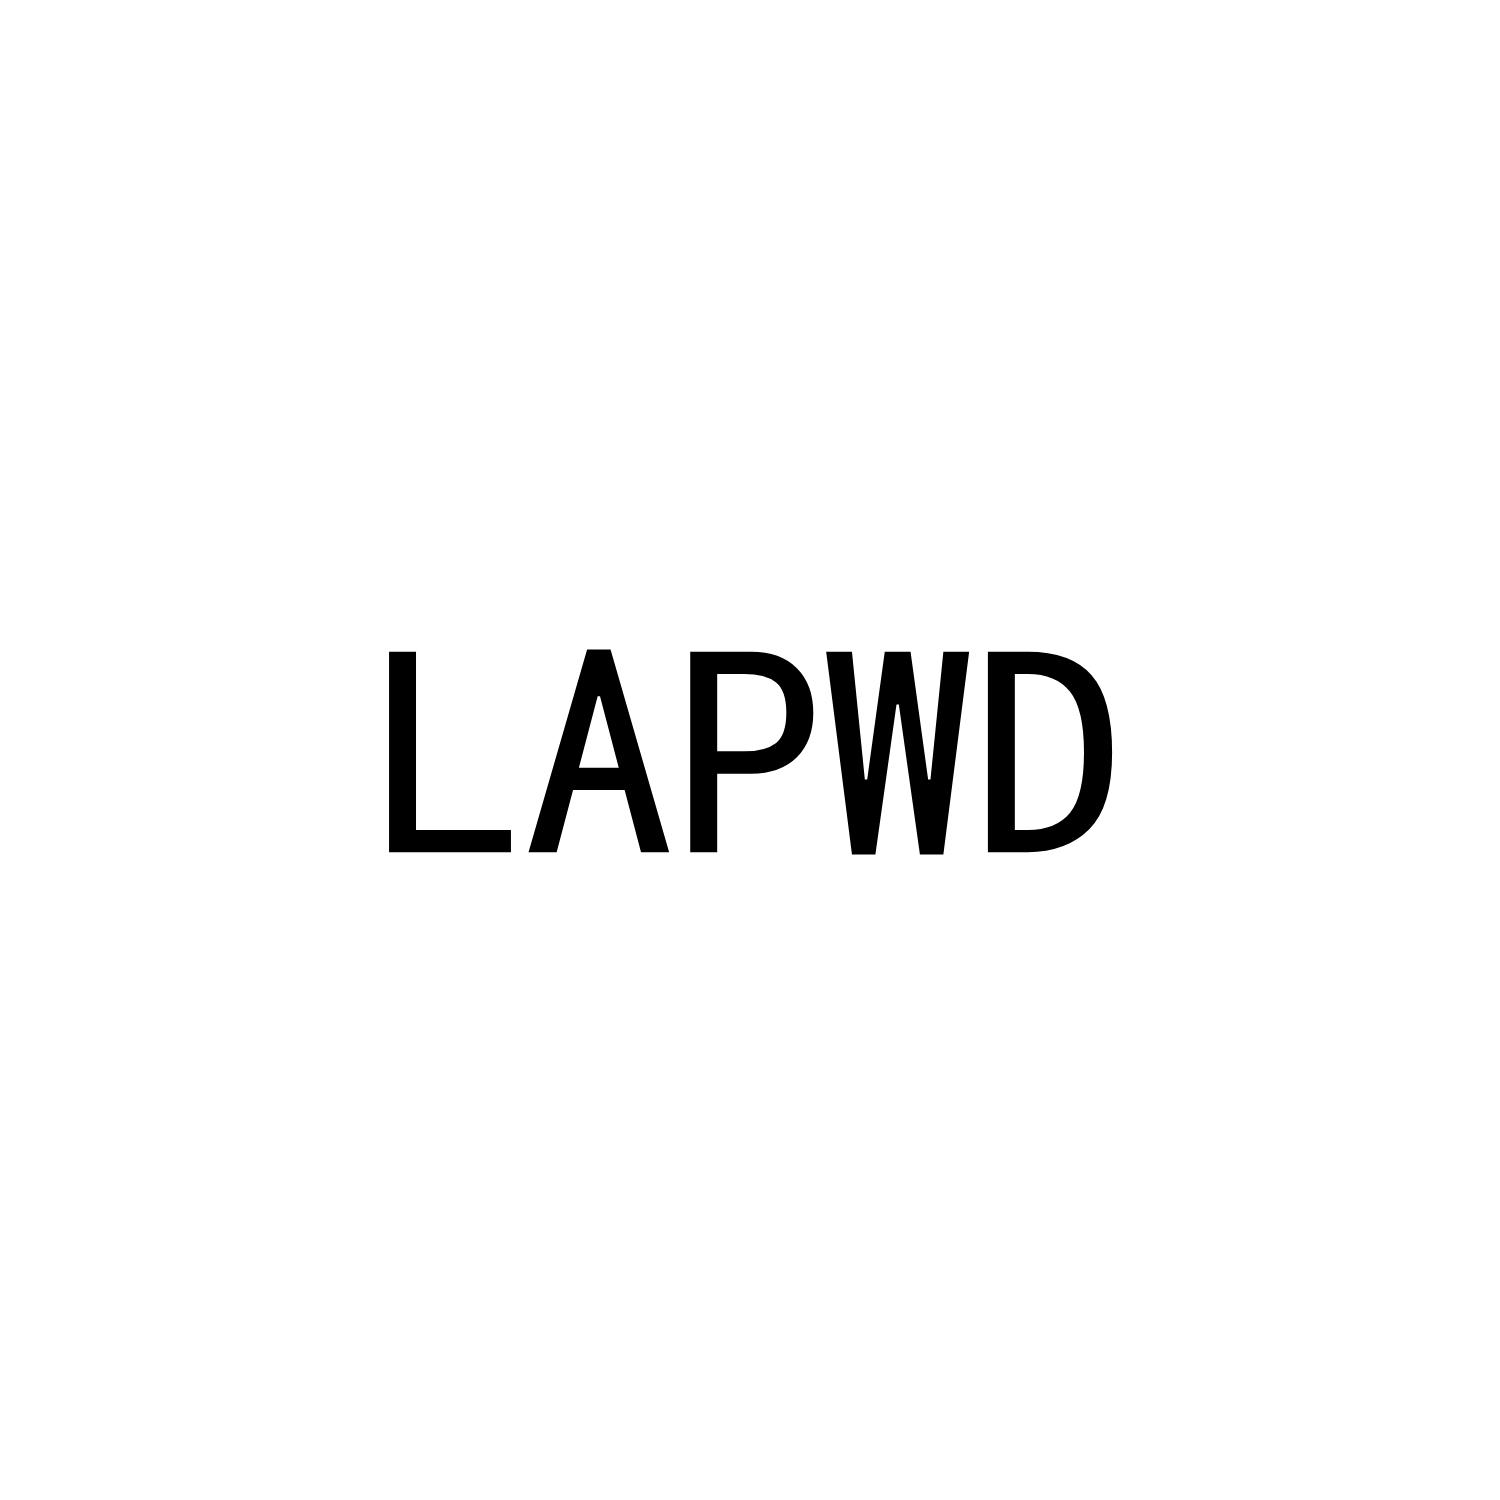 LAPWD